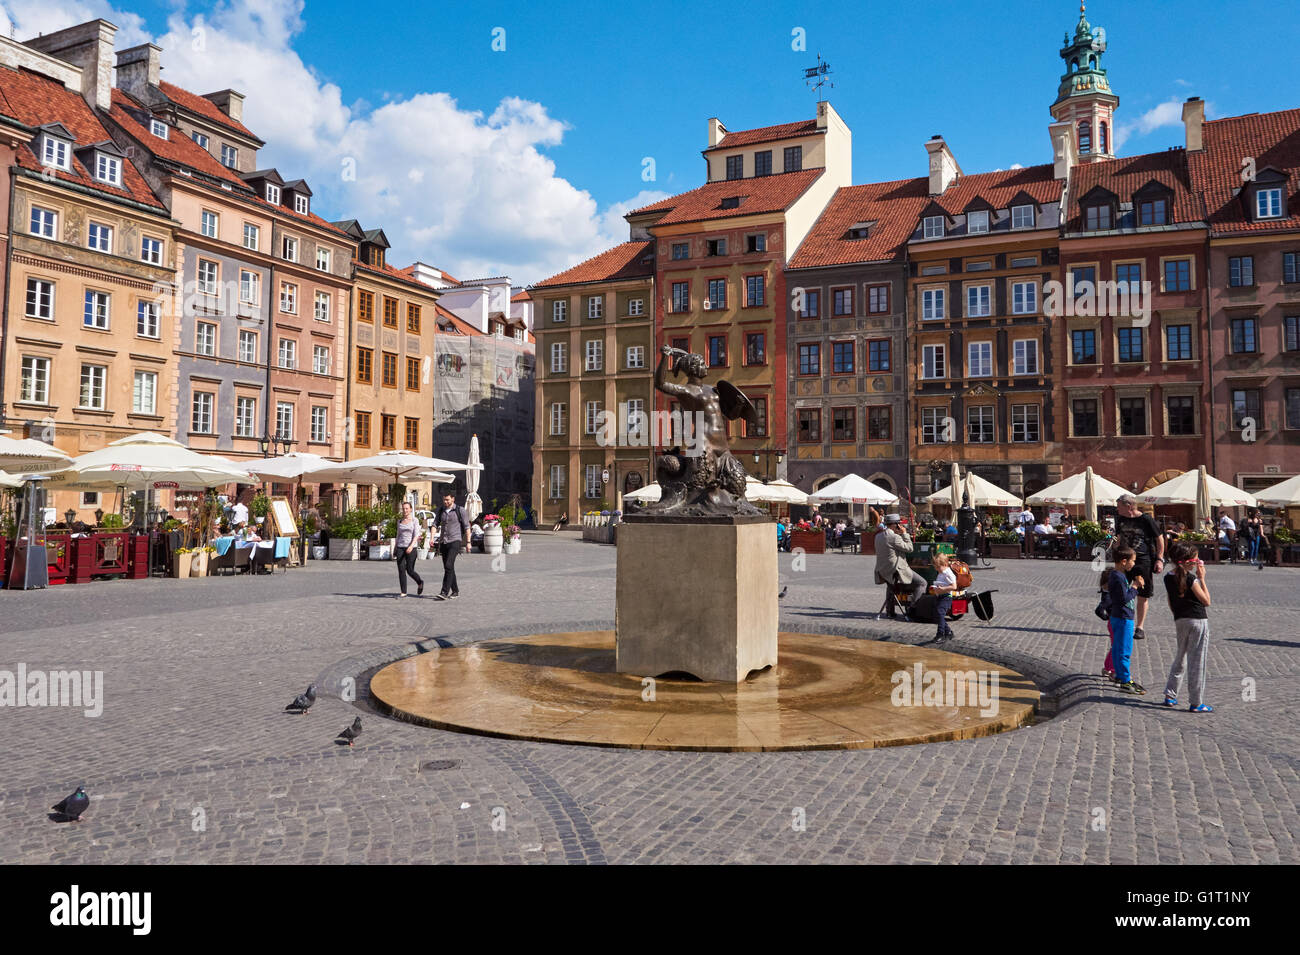 La sirène fontaine au centre de la place de la vieille ville de Varsovie, Pologne Banque D'Images